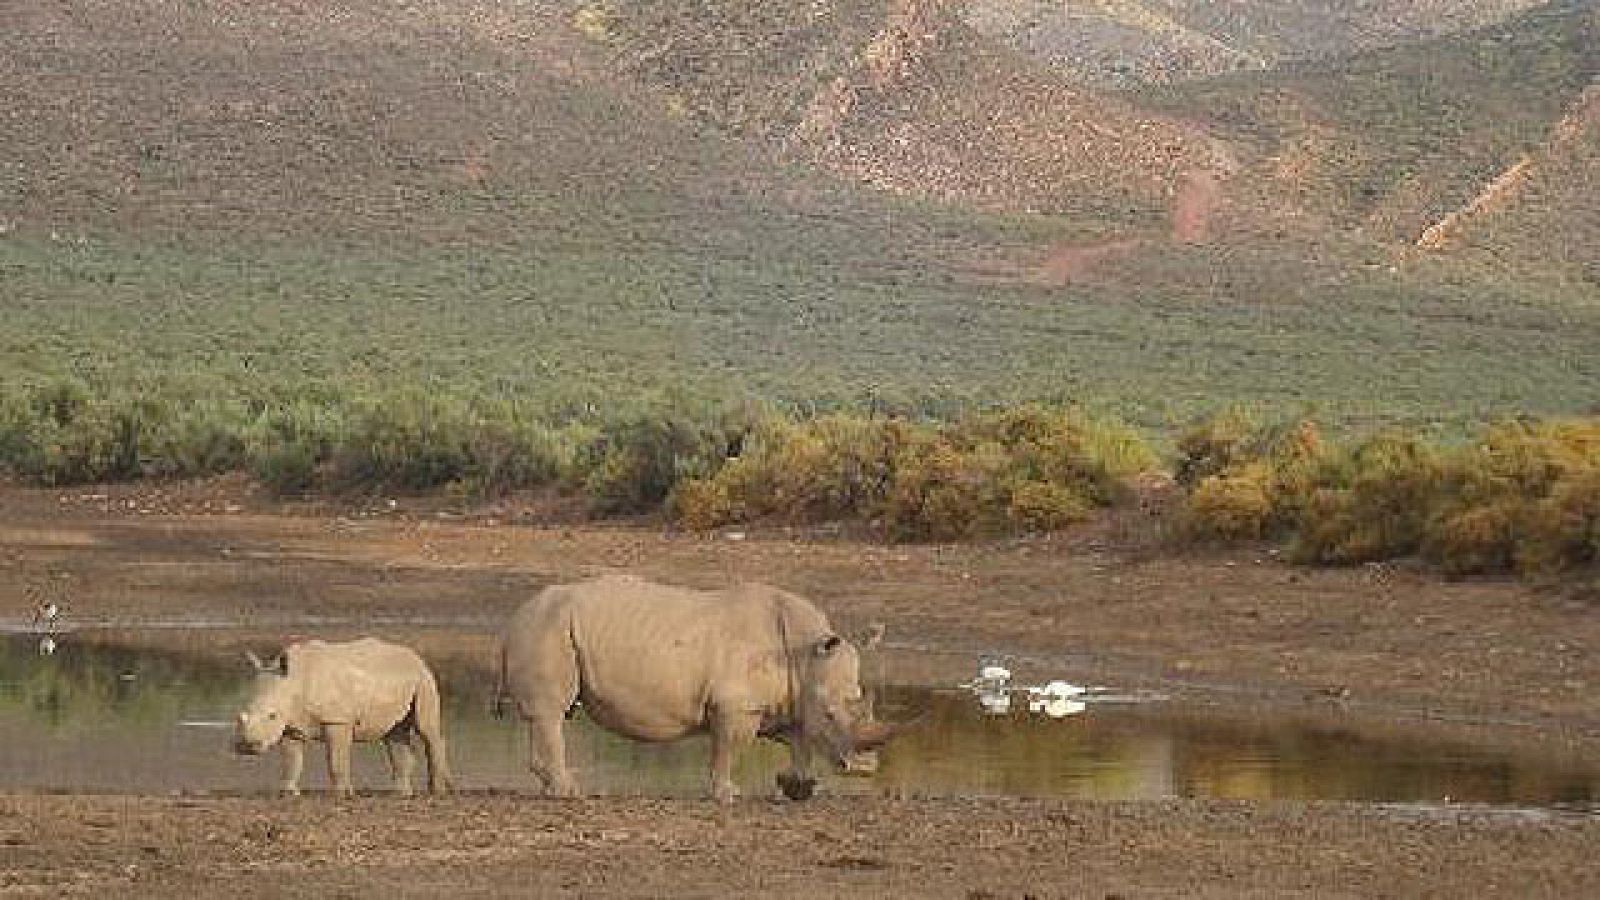 On Off: La esperanza de los rinocerontes